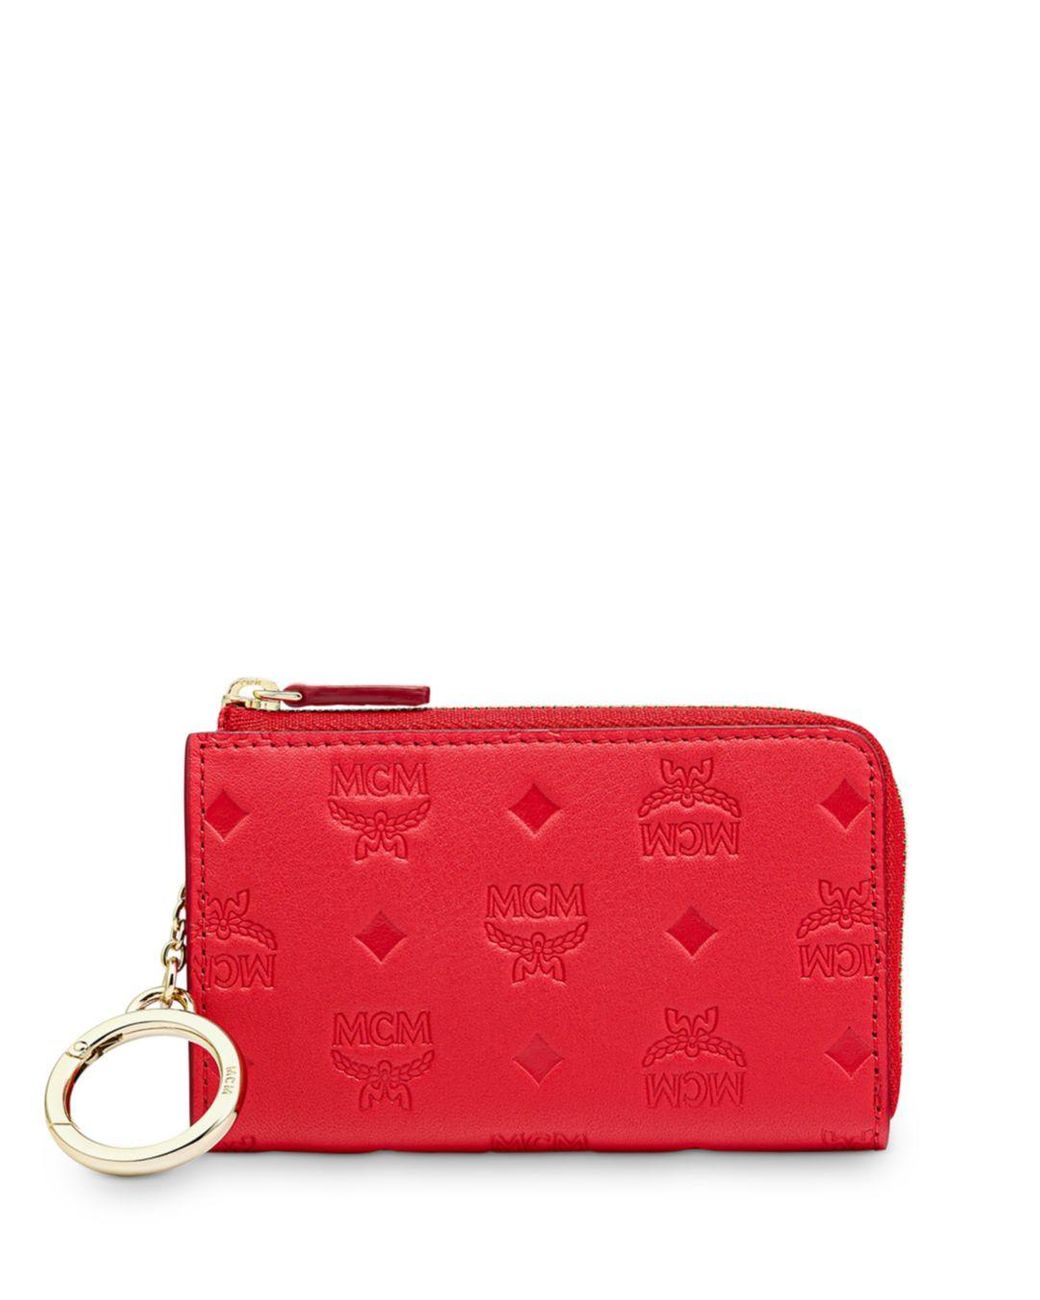 MCM Klara Monogram Leather Zip Wallet With Key Ring in Red | Lyst